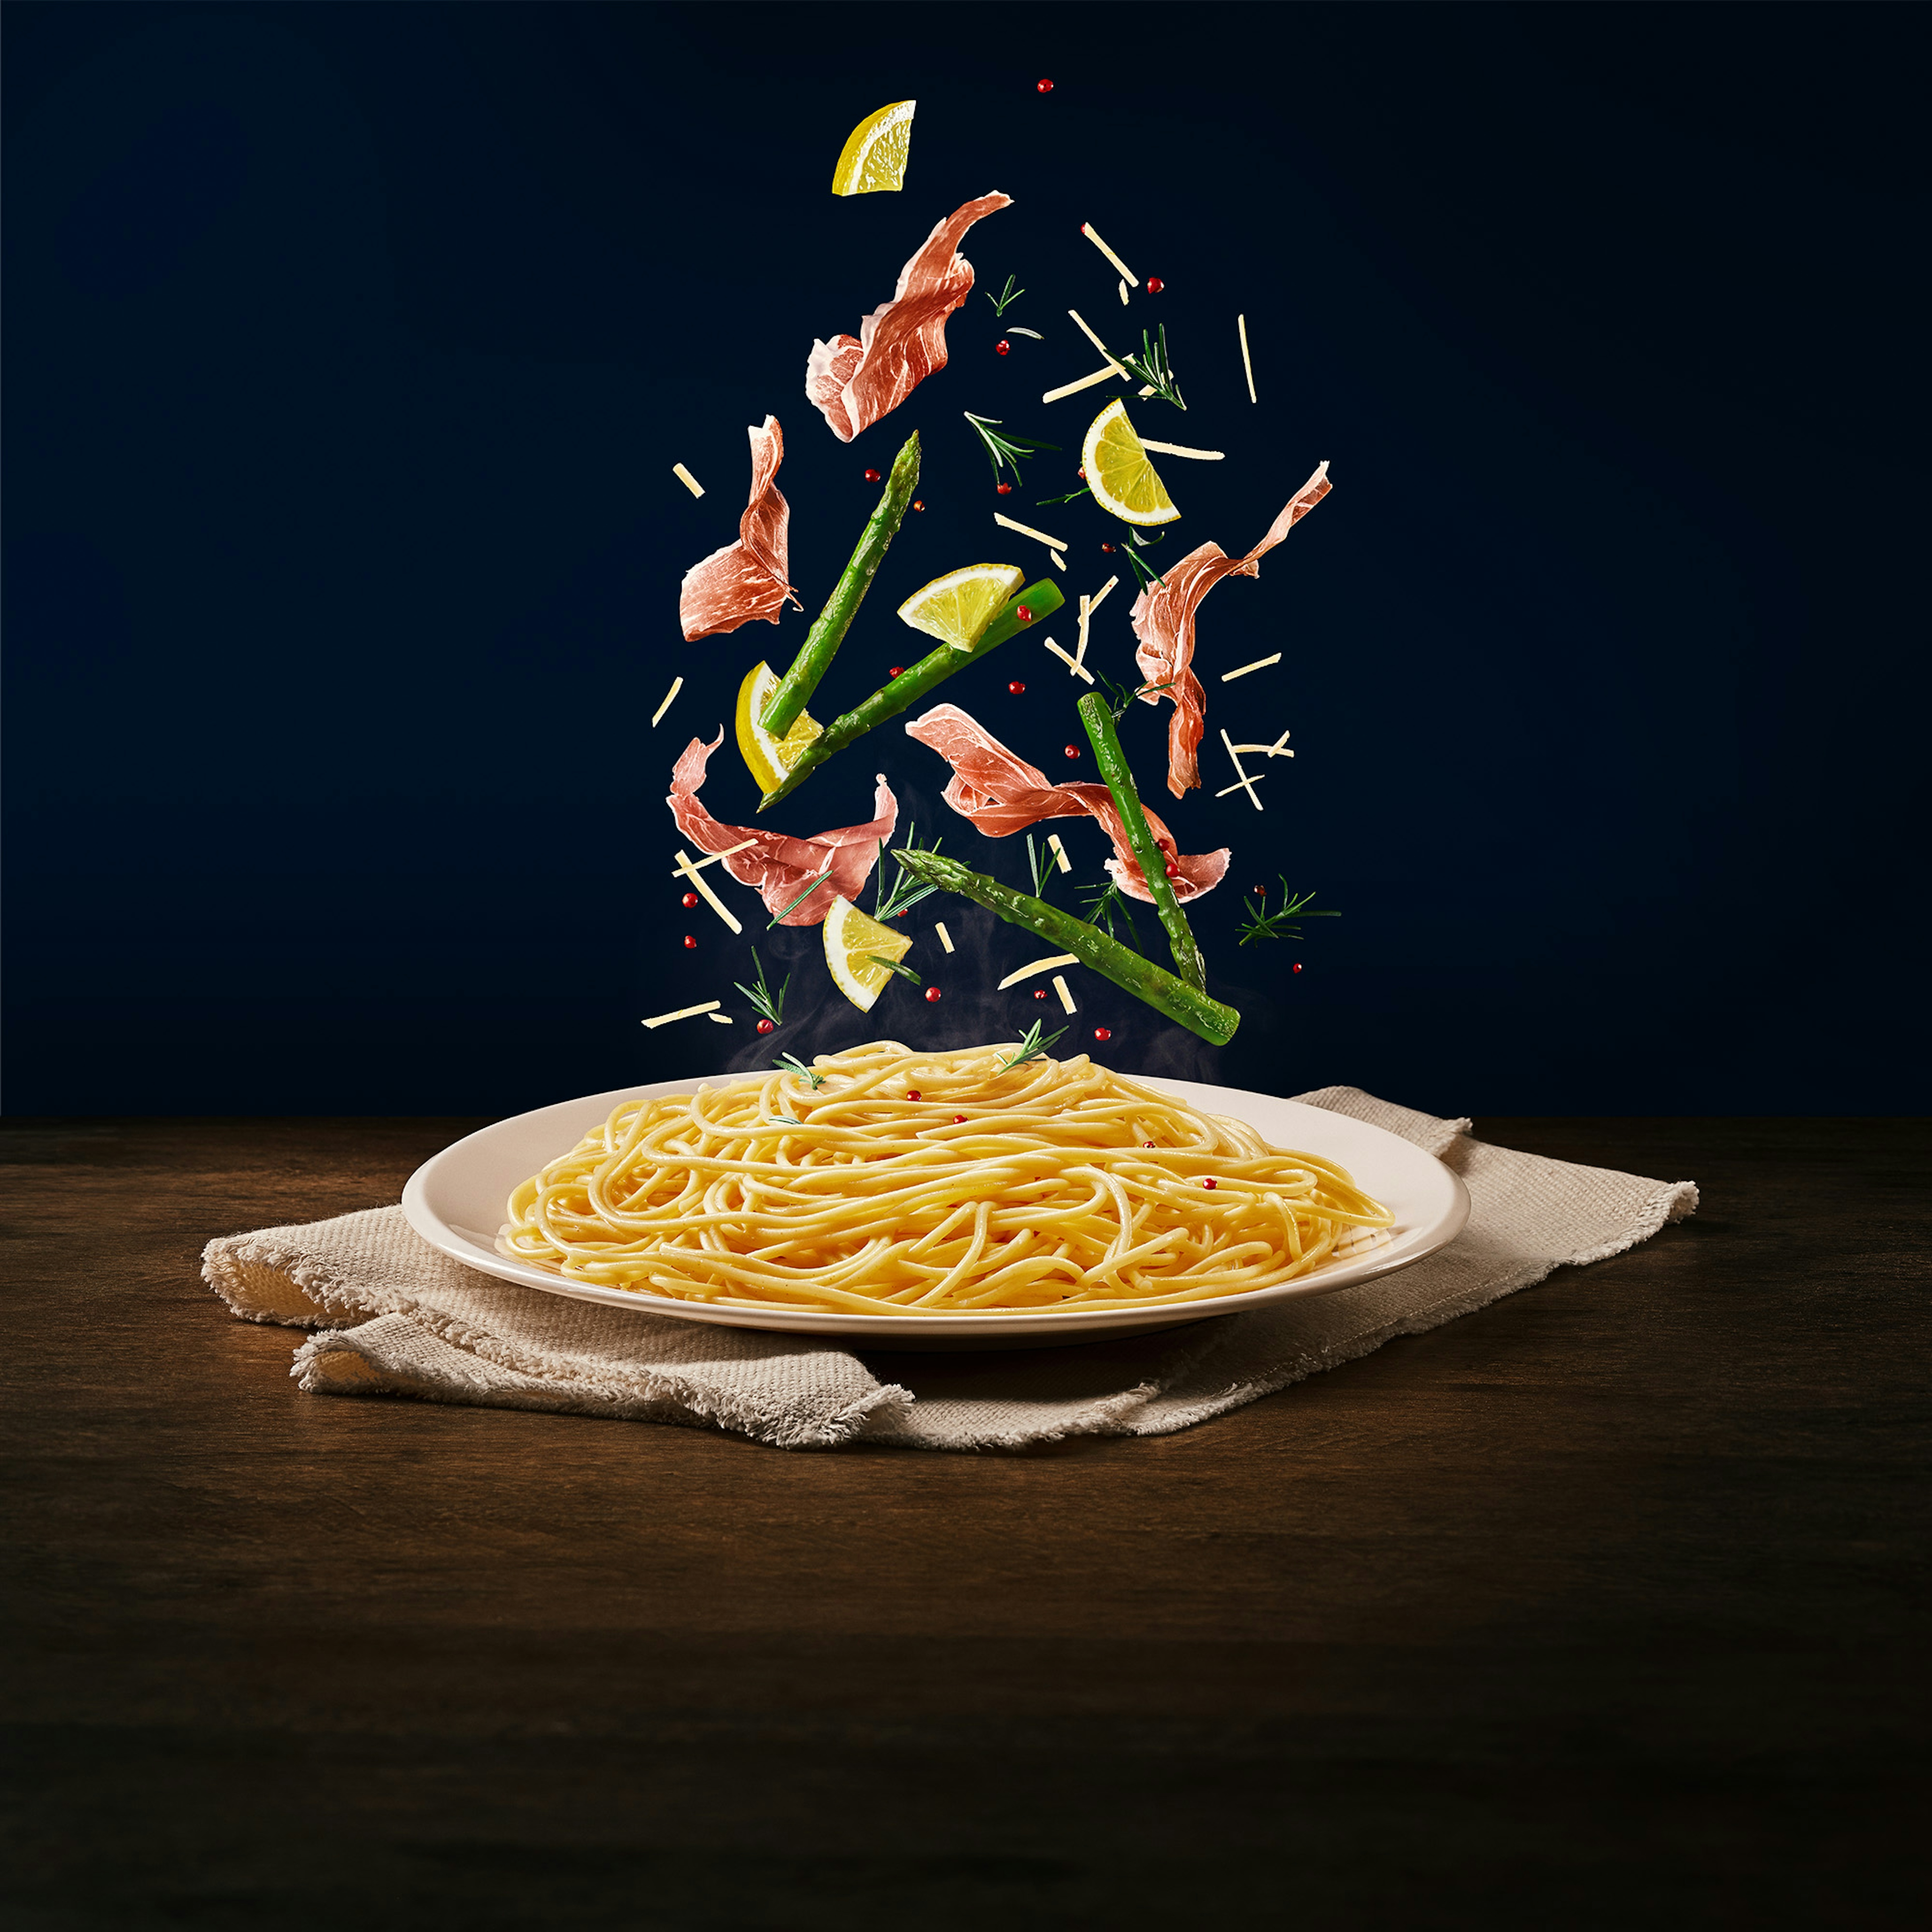 Ingredientes (aspargos, limão e presunto parma) caindo em cima do macarrão tipo espaguete